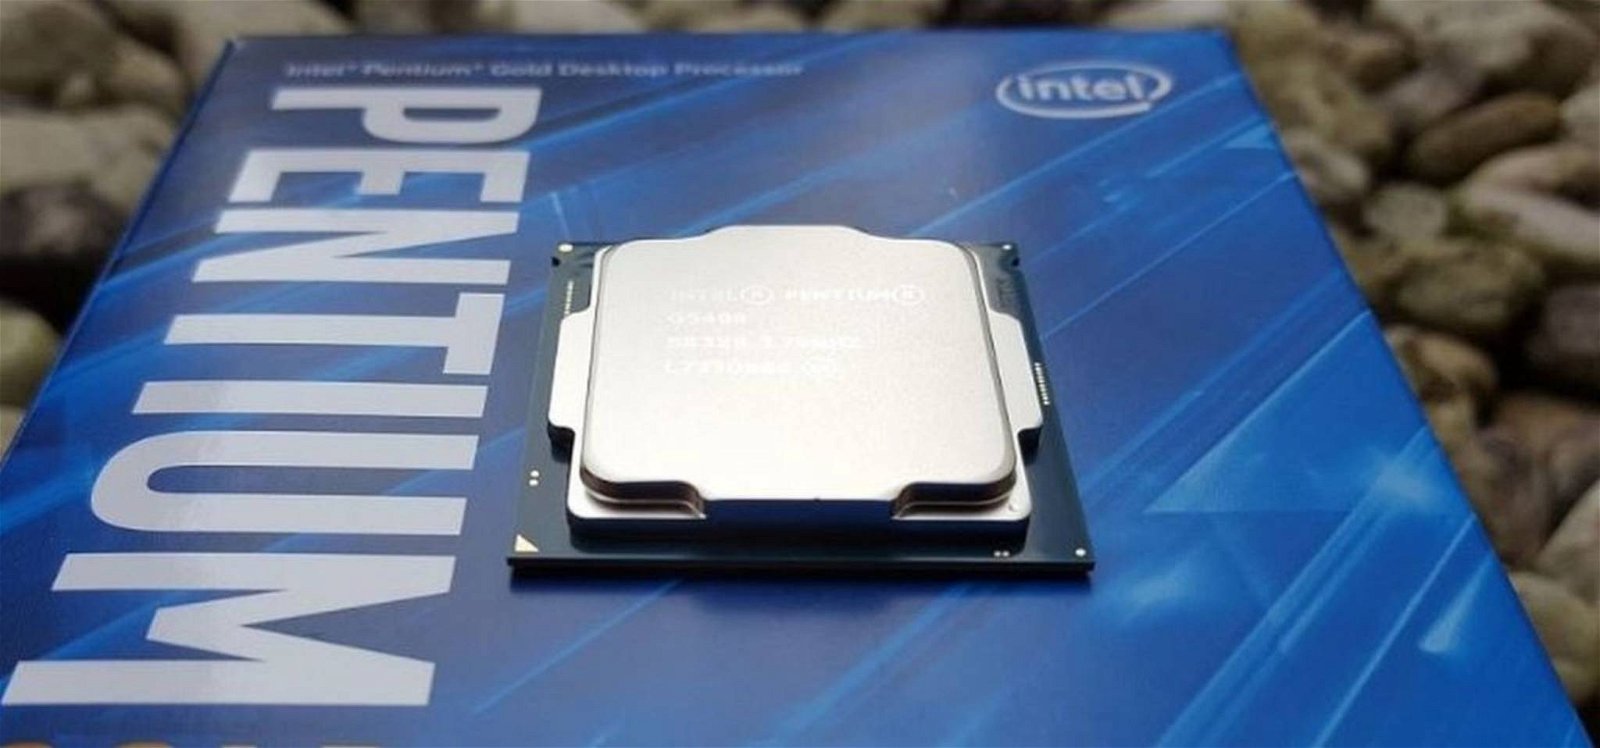 Immagine di Celeron e Pentium addio, ecco i nuovi "Intel Processor"